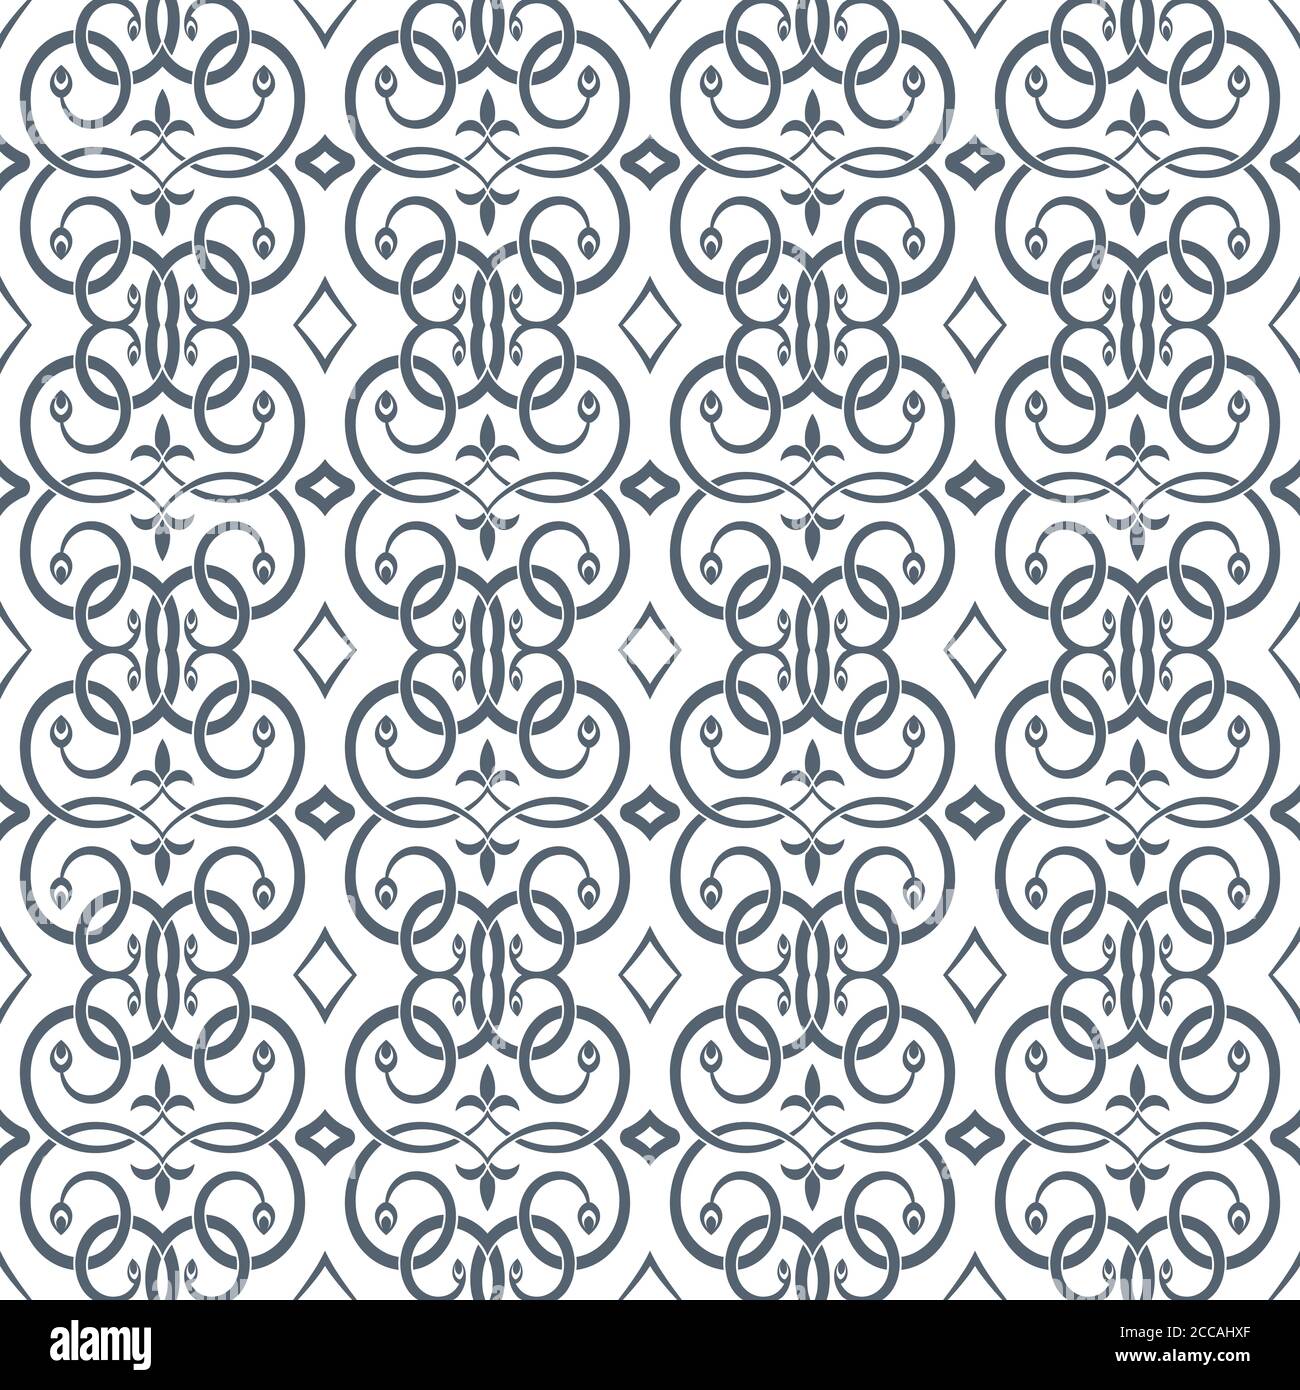 Nahtloses Muster im arabischen Stil. Abstrakte Tapete. Islamische Struktur. Regelmäßig wiederholende Fliesen mit sich schneidenden geschwungenen Linien. Vektorelement von gr Stock Vektor